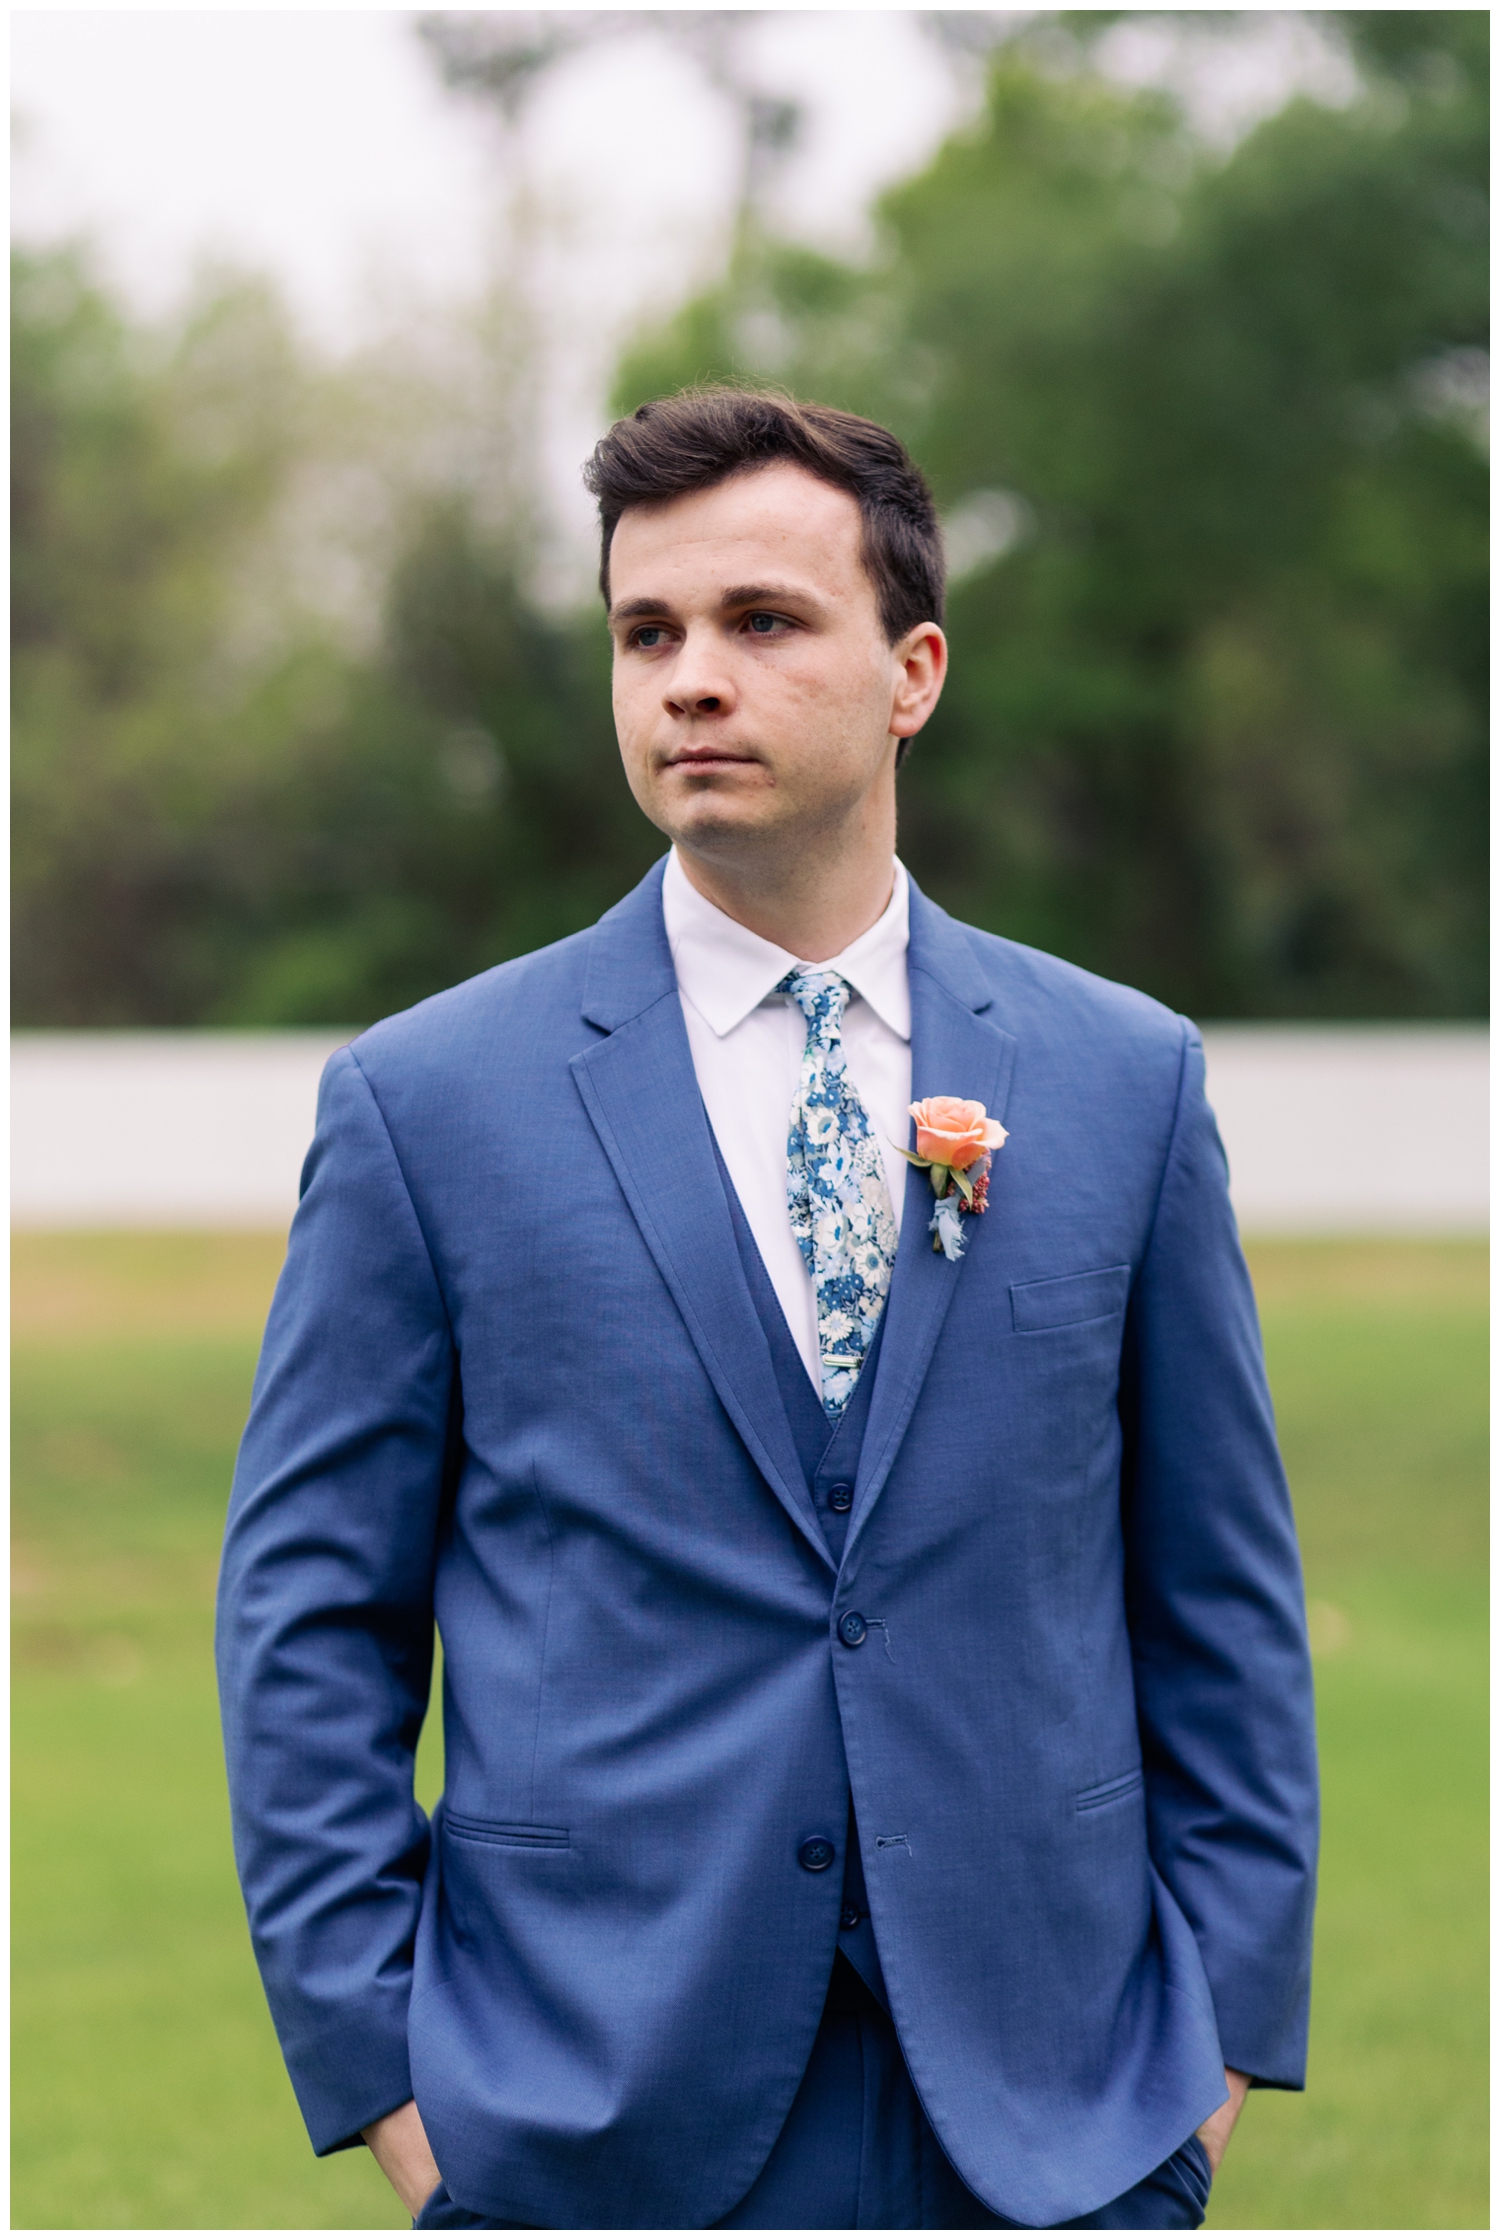 groom in blue suit walking outdoors